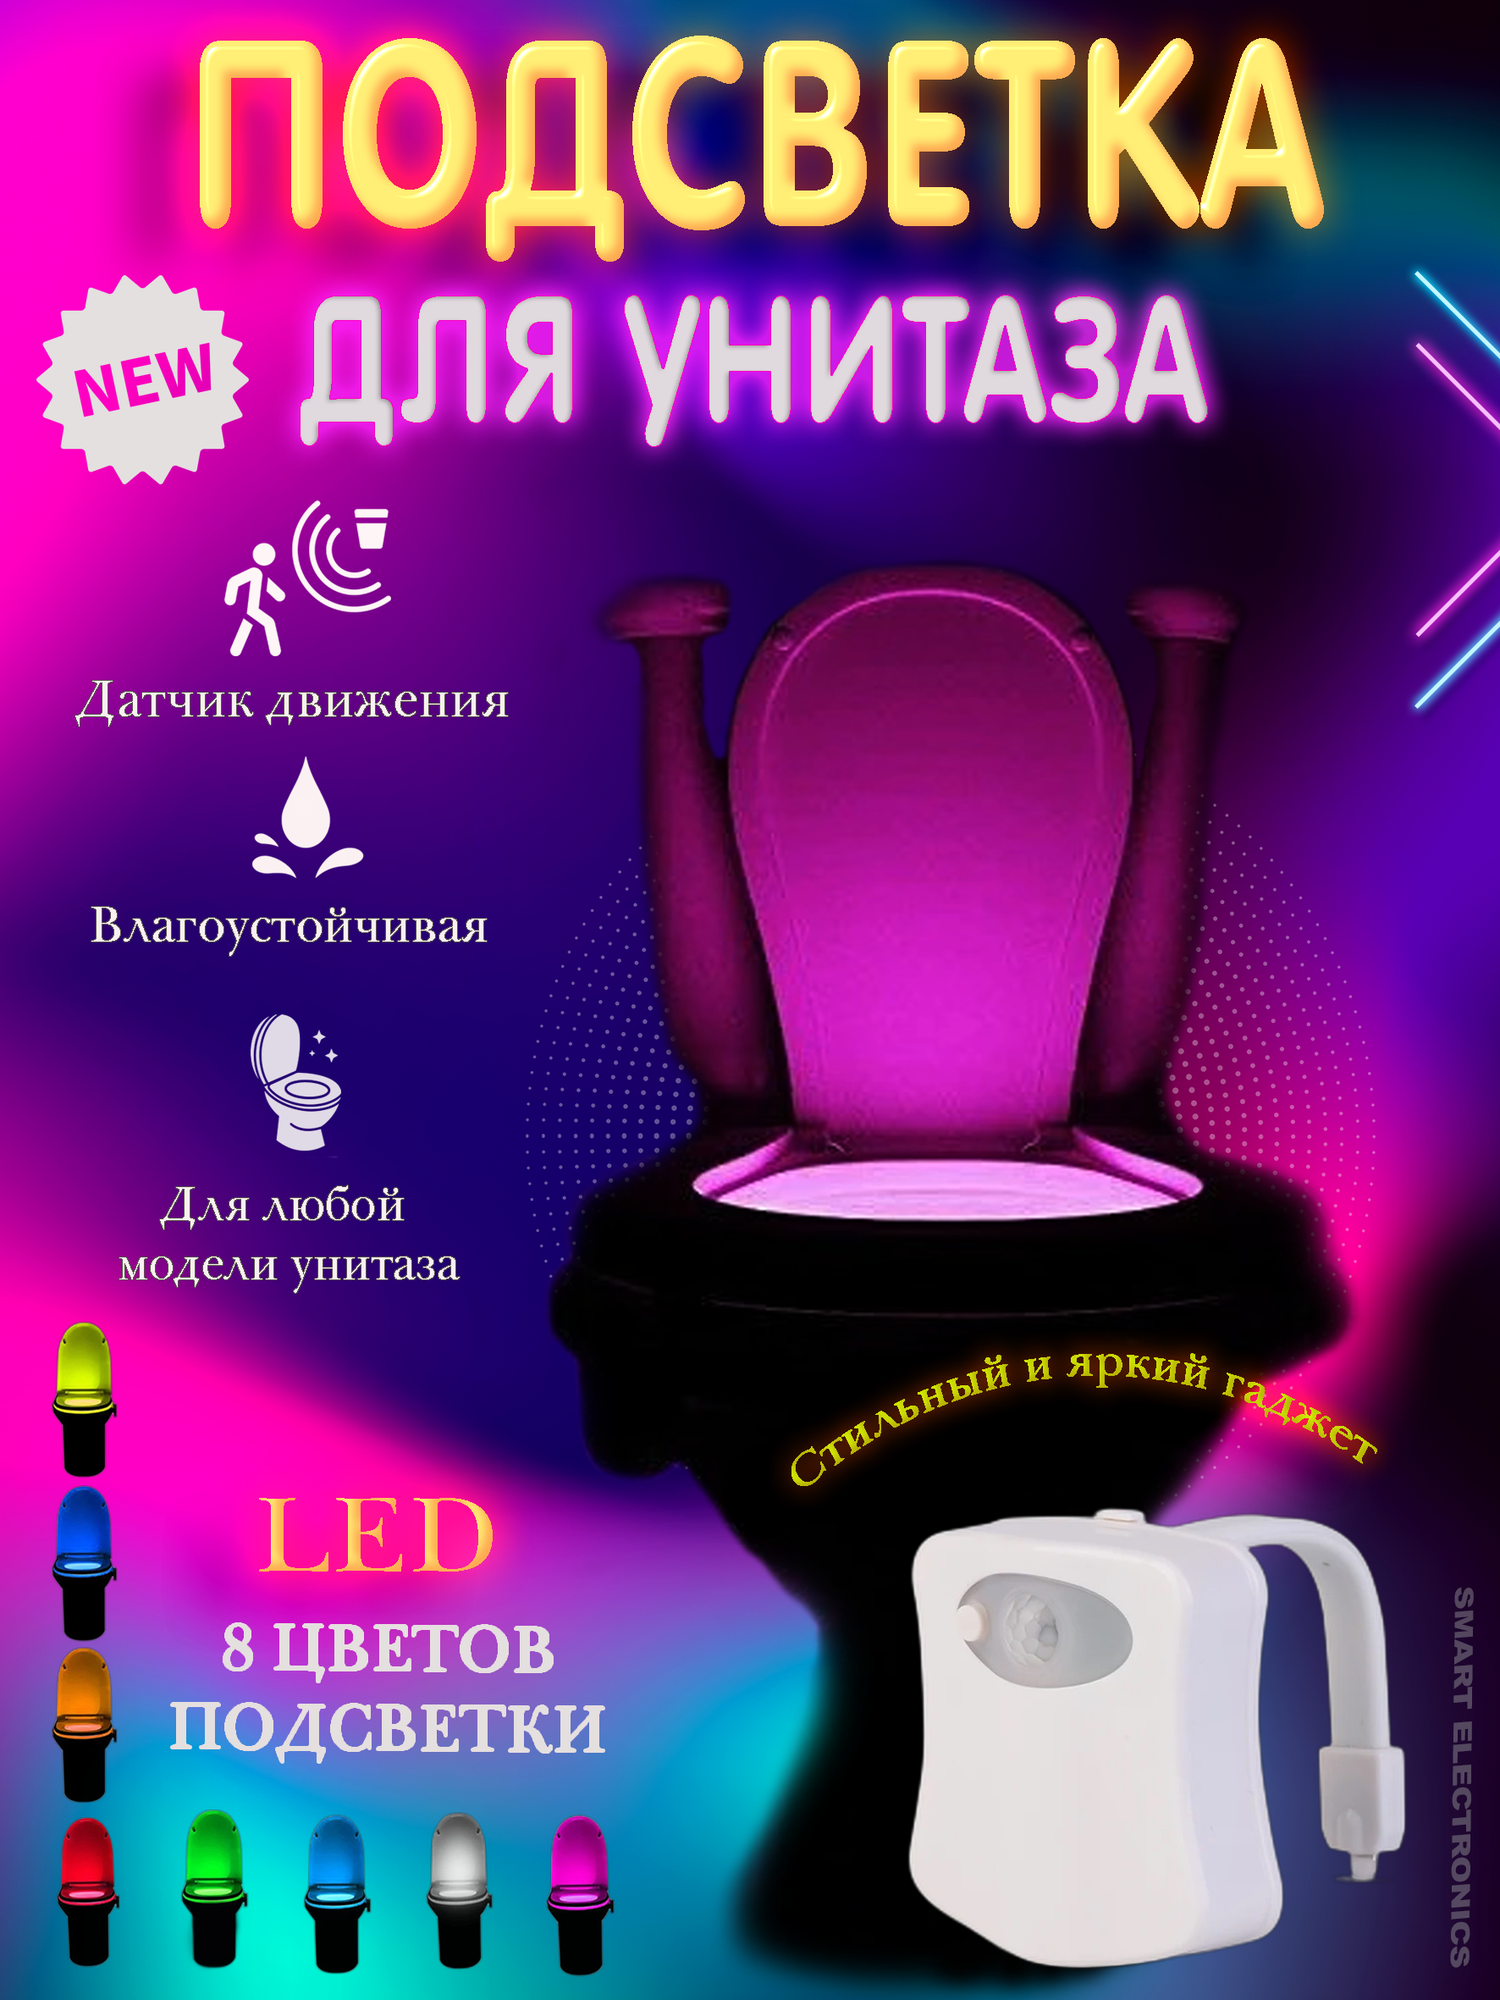 Оригинальная LED подсветка для унитаза и ванной SHINING/ RZ-248 Светодиодный ночник с датчиком движения и освещенности